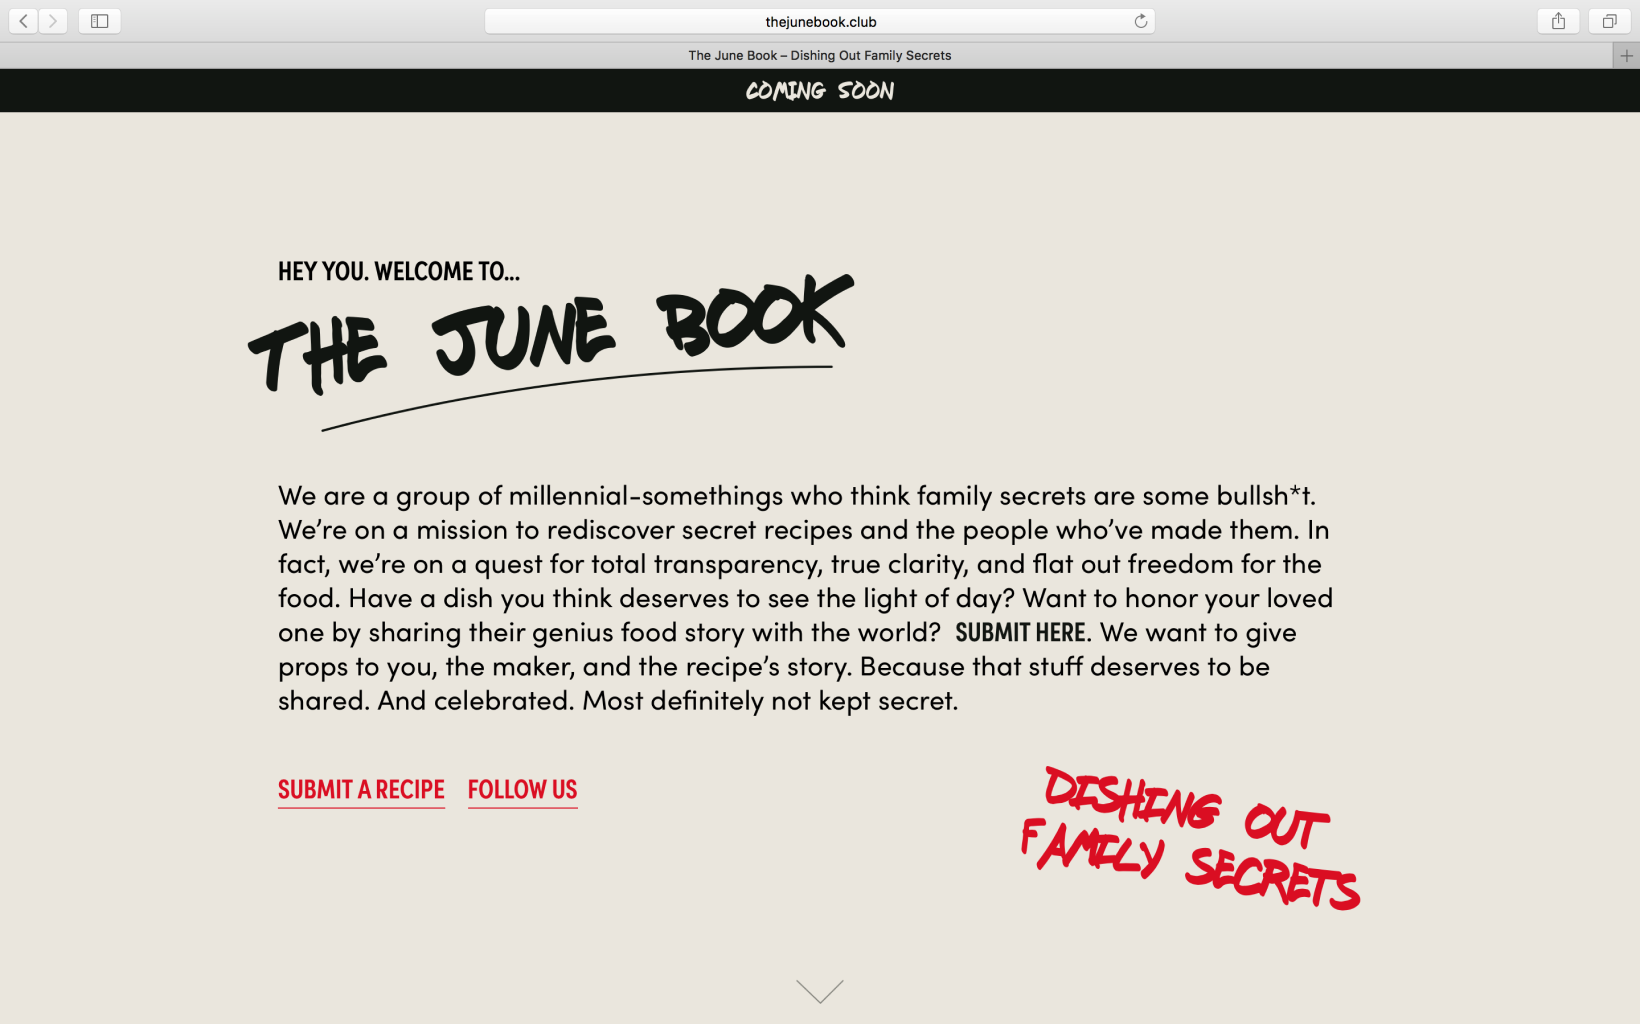 The June Book Website